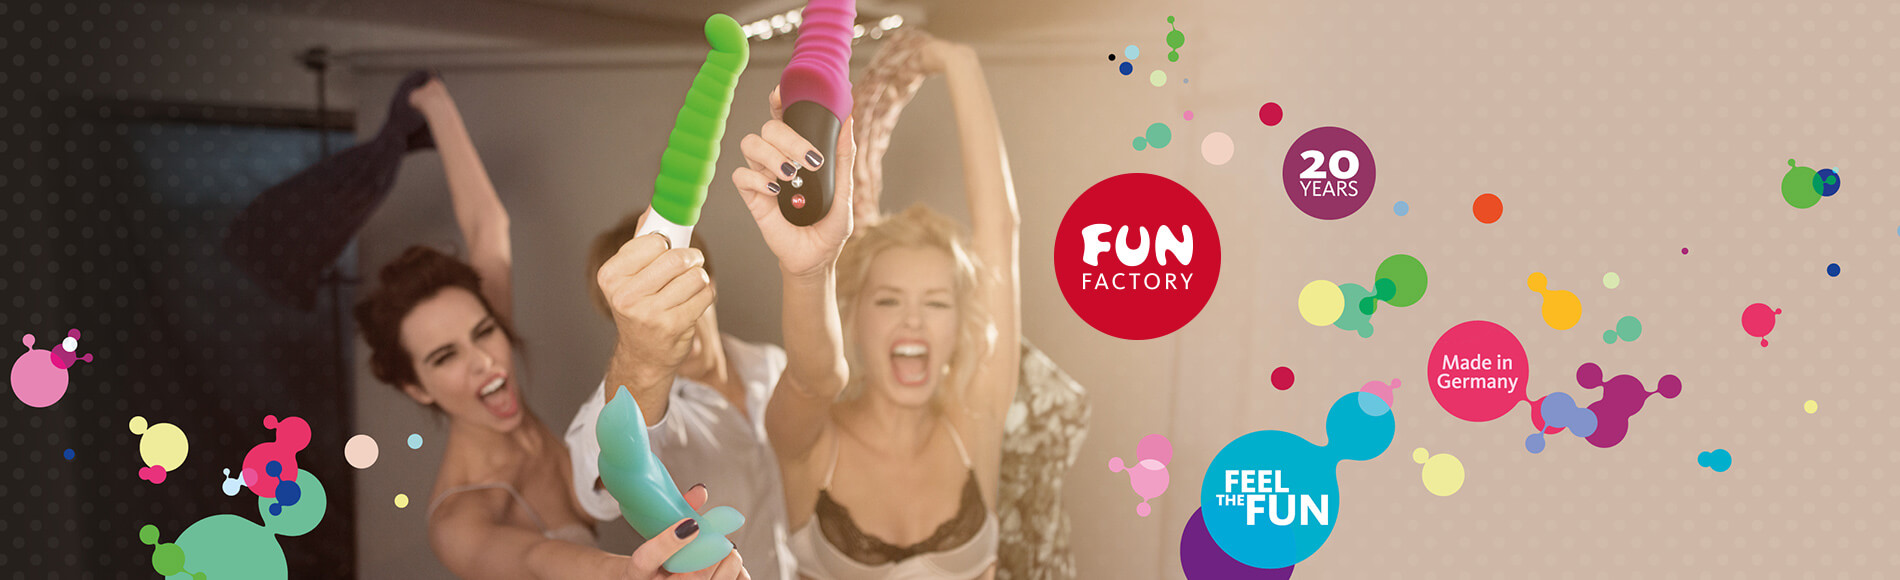 Fun Factory – Feel the Fun